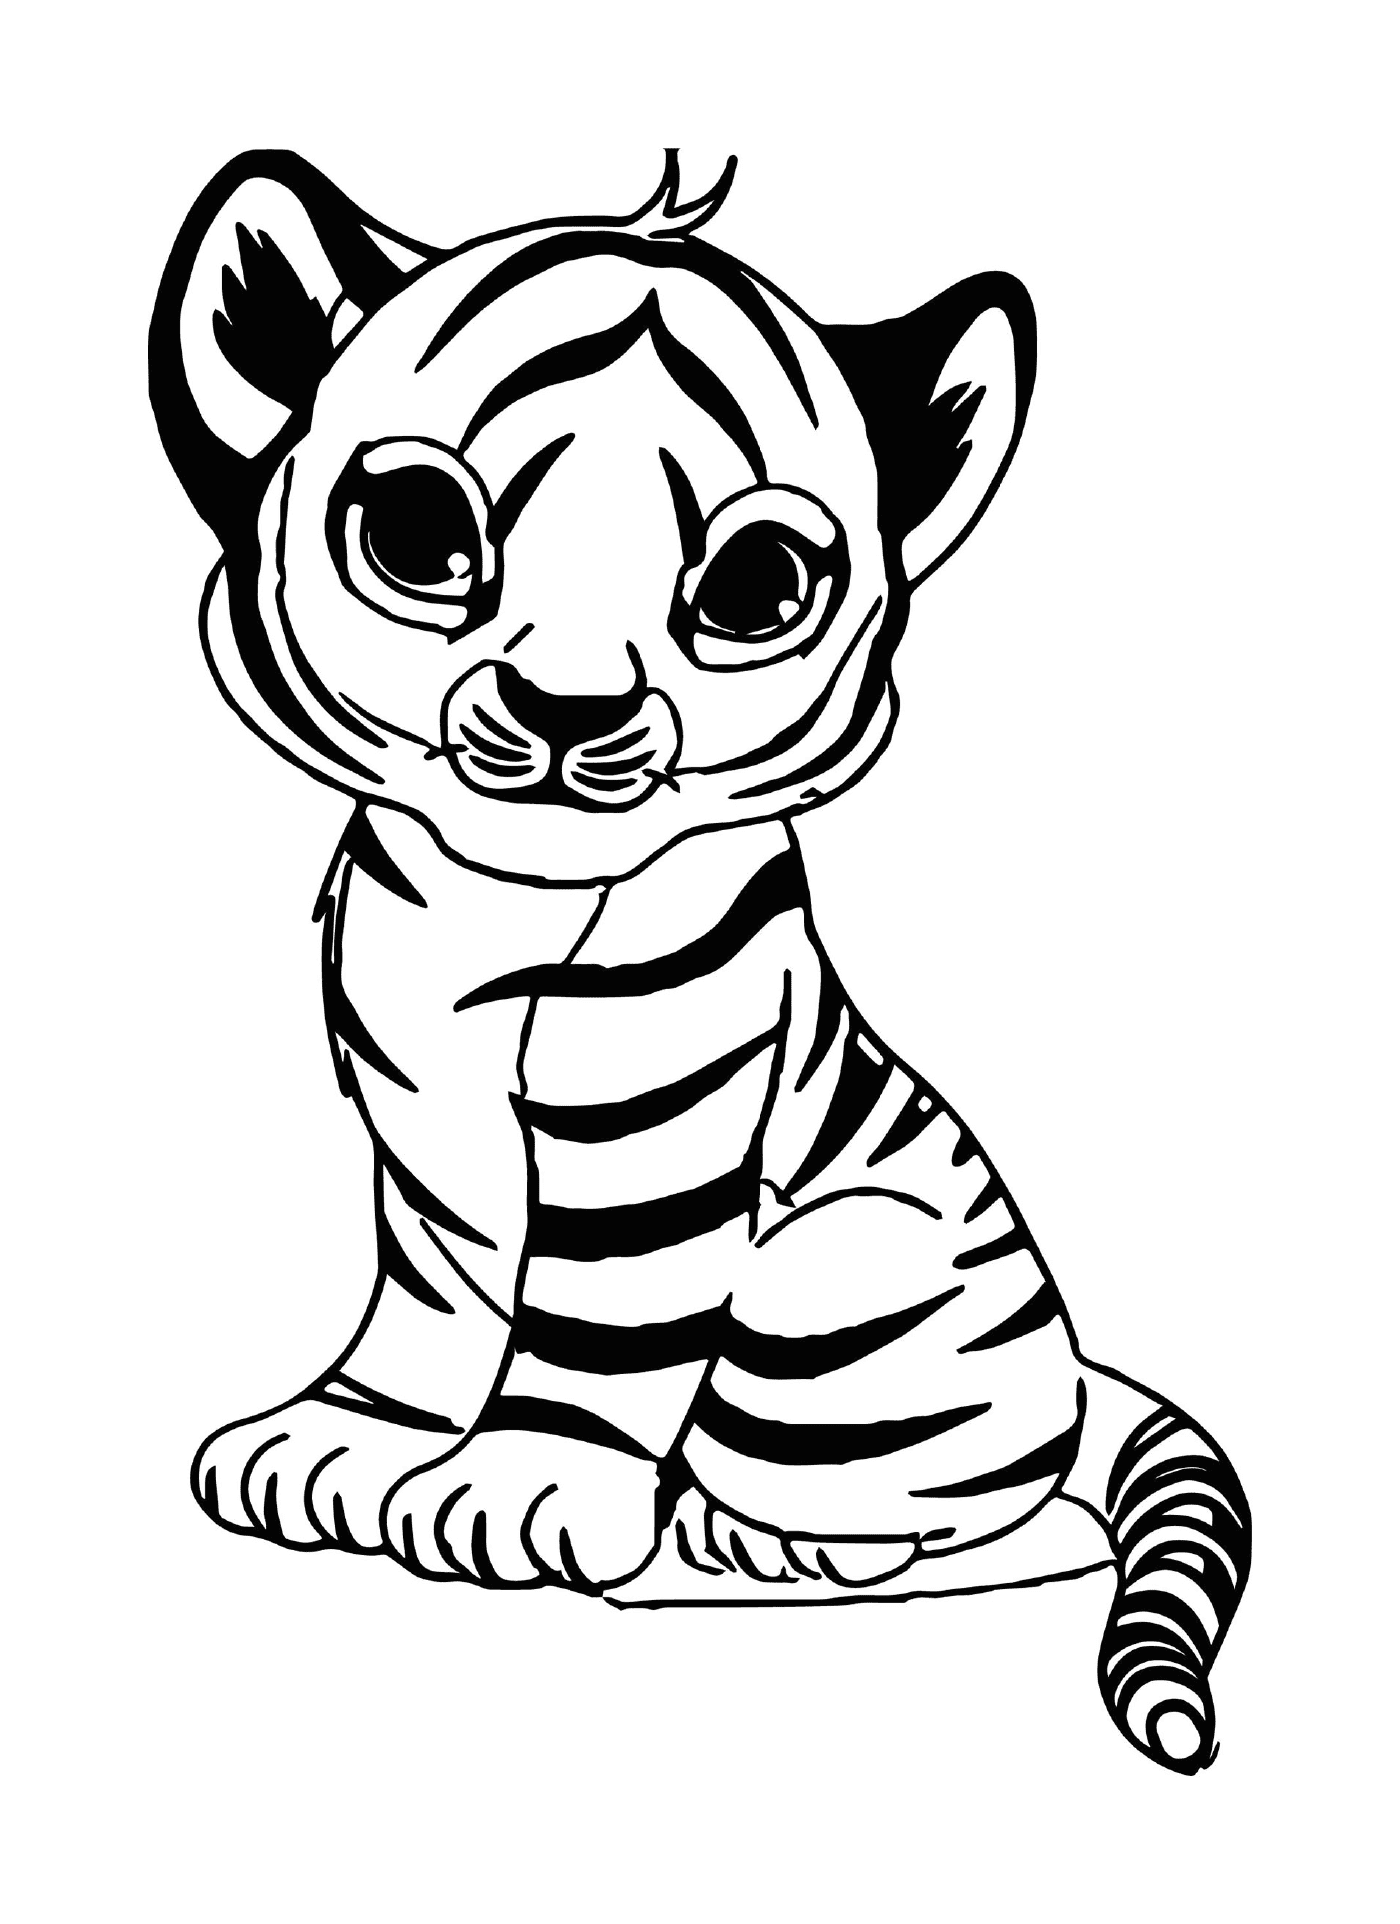  a tiger cub 